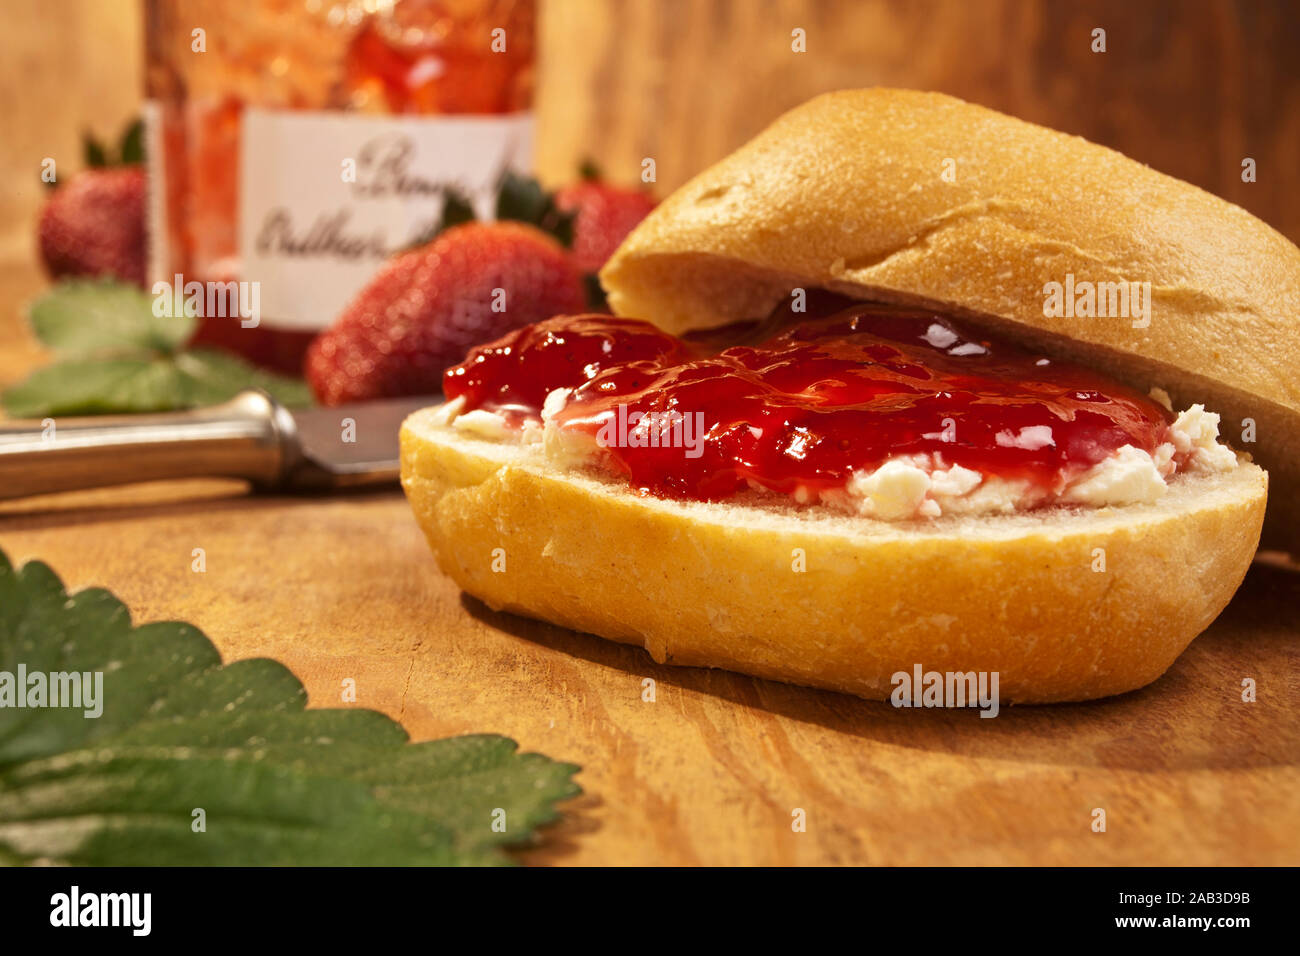 Brötchen mit Frischkäse und frischer Erdbeermarmelade |Rolls with cream cheese and fresh strawberry jam| Stock Photo